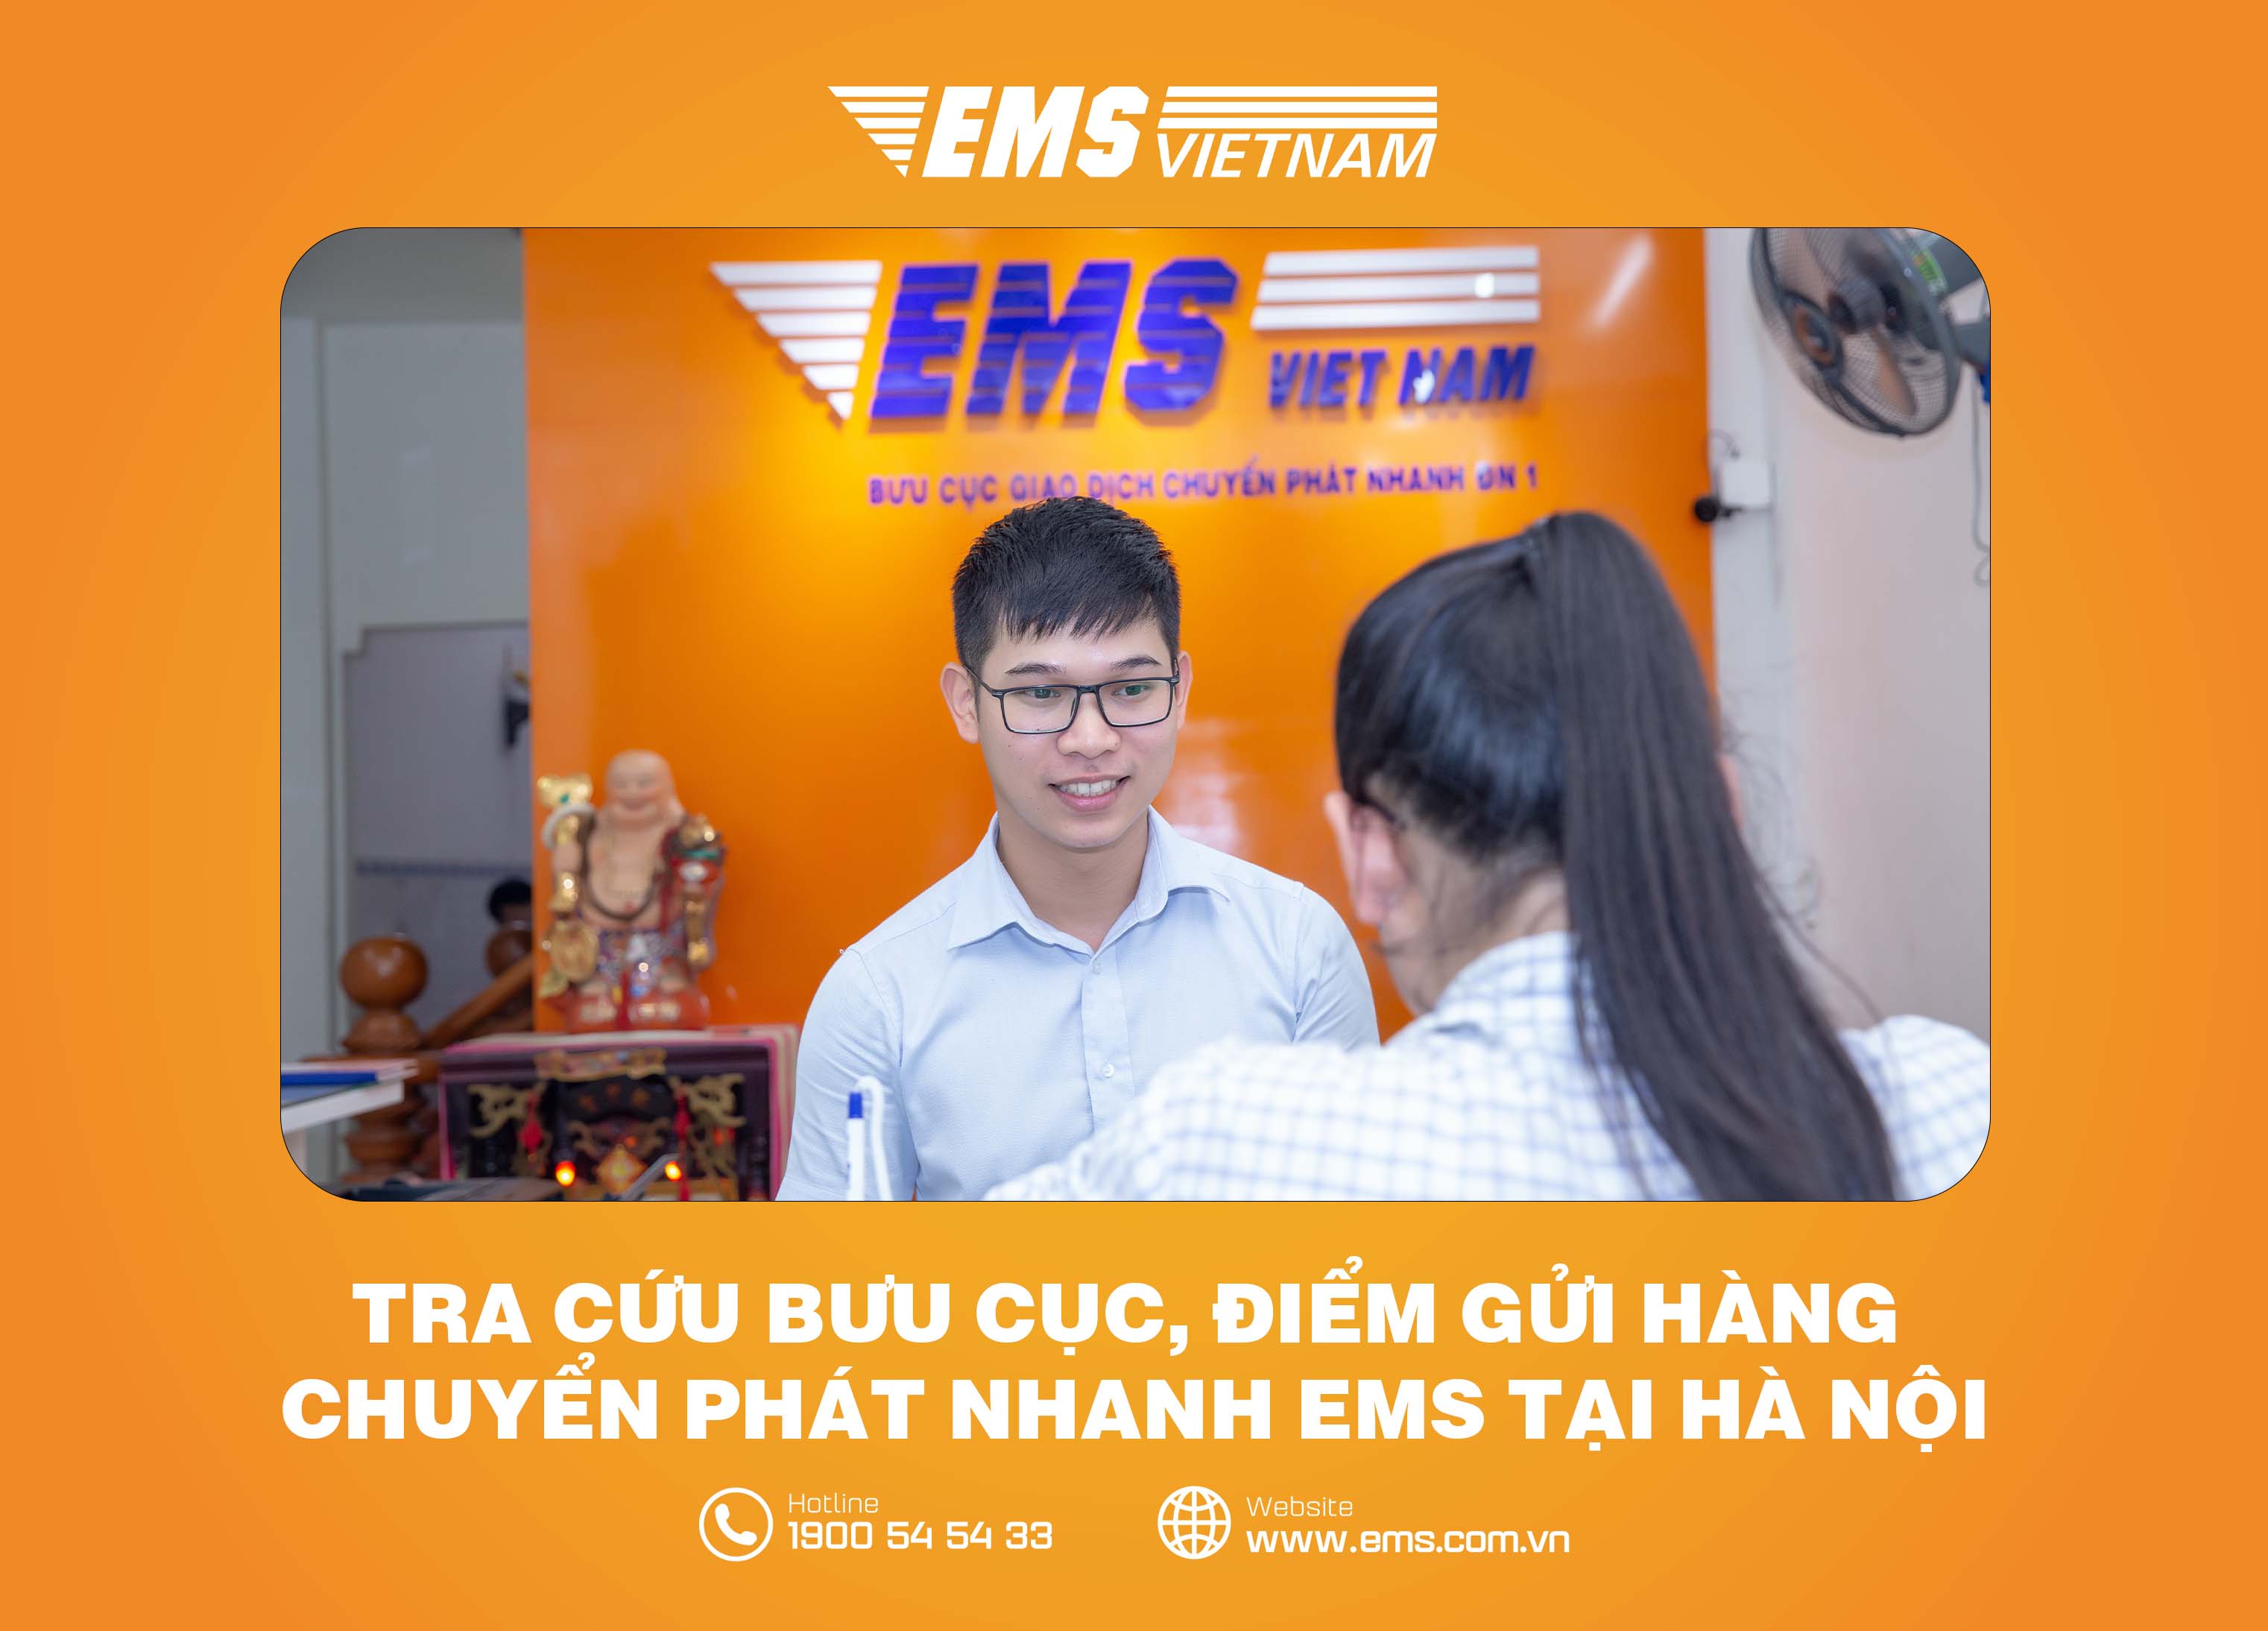 EMS: Bạn là một người yêu thích vận tải và muốn biết thêm về dịch vụ EMS? Hãy xem hình ảnh liên quan đến từ khóa này để khám phá cách thức hoạt động của dịch vụ EMS và những lợi ích mà nó mang lại cho những người yêu thích tốc độ và tiện lợi.